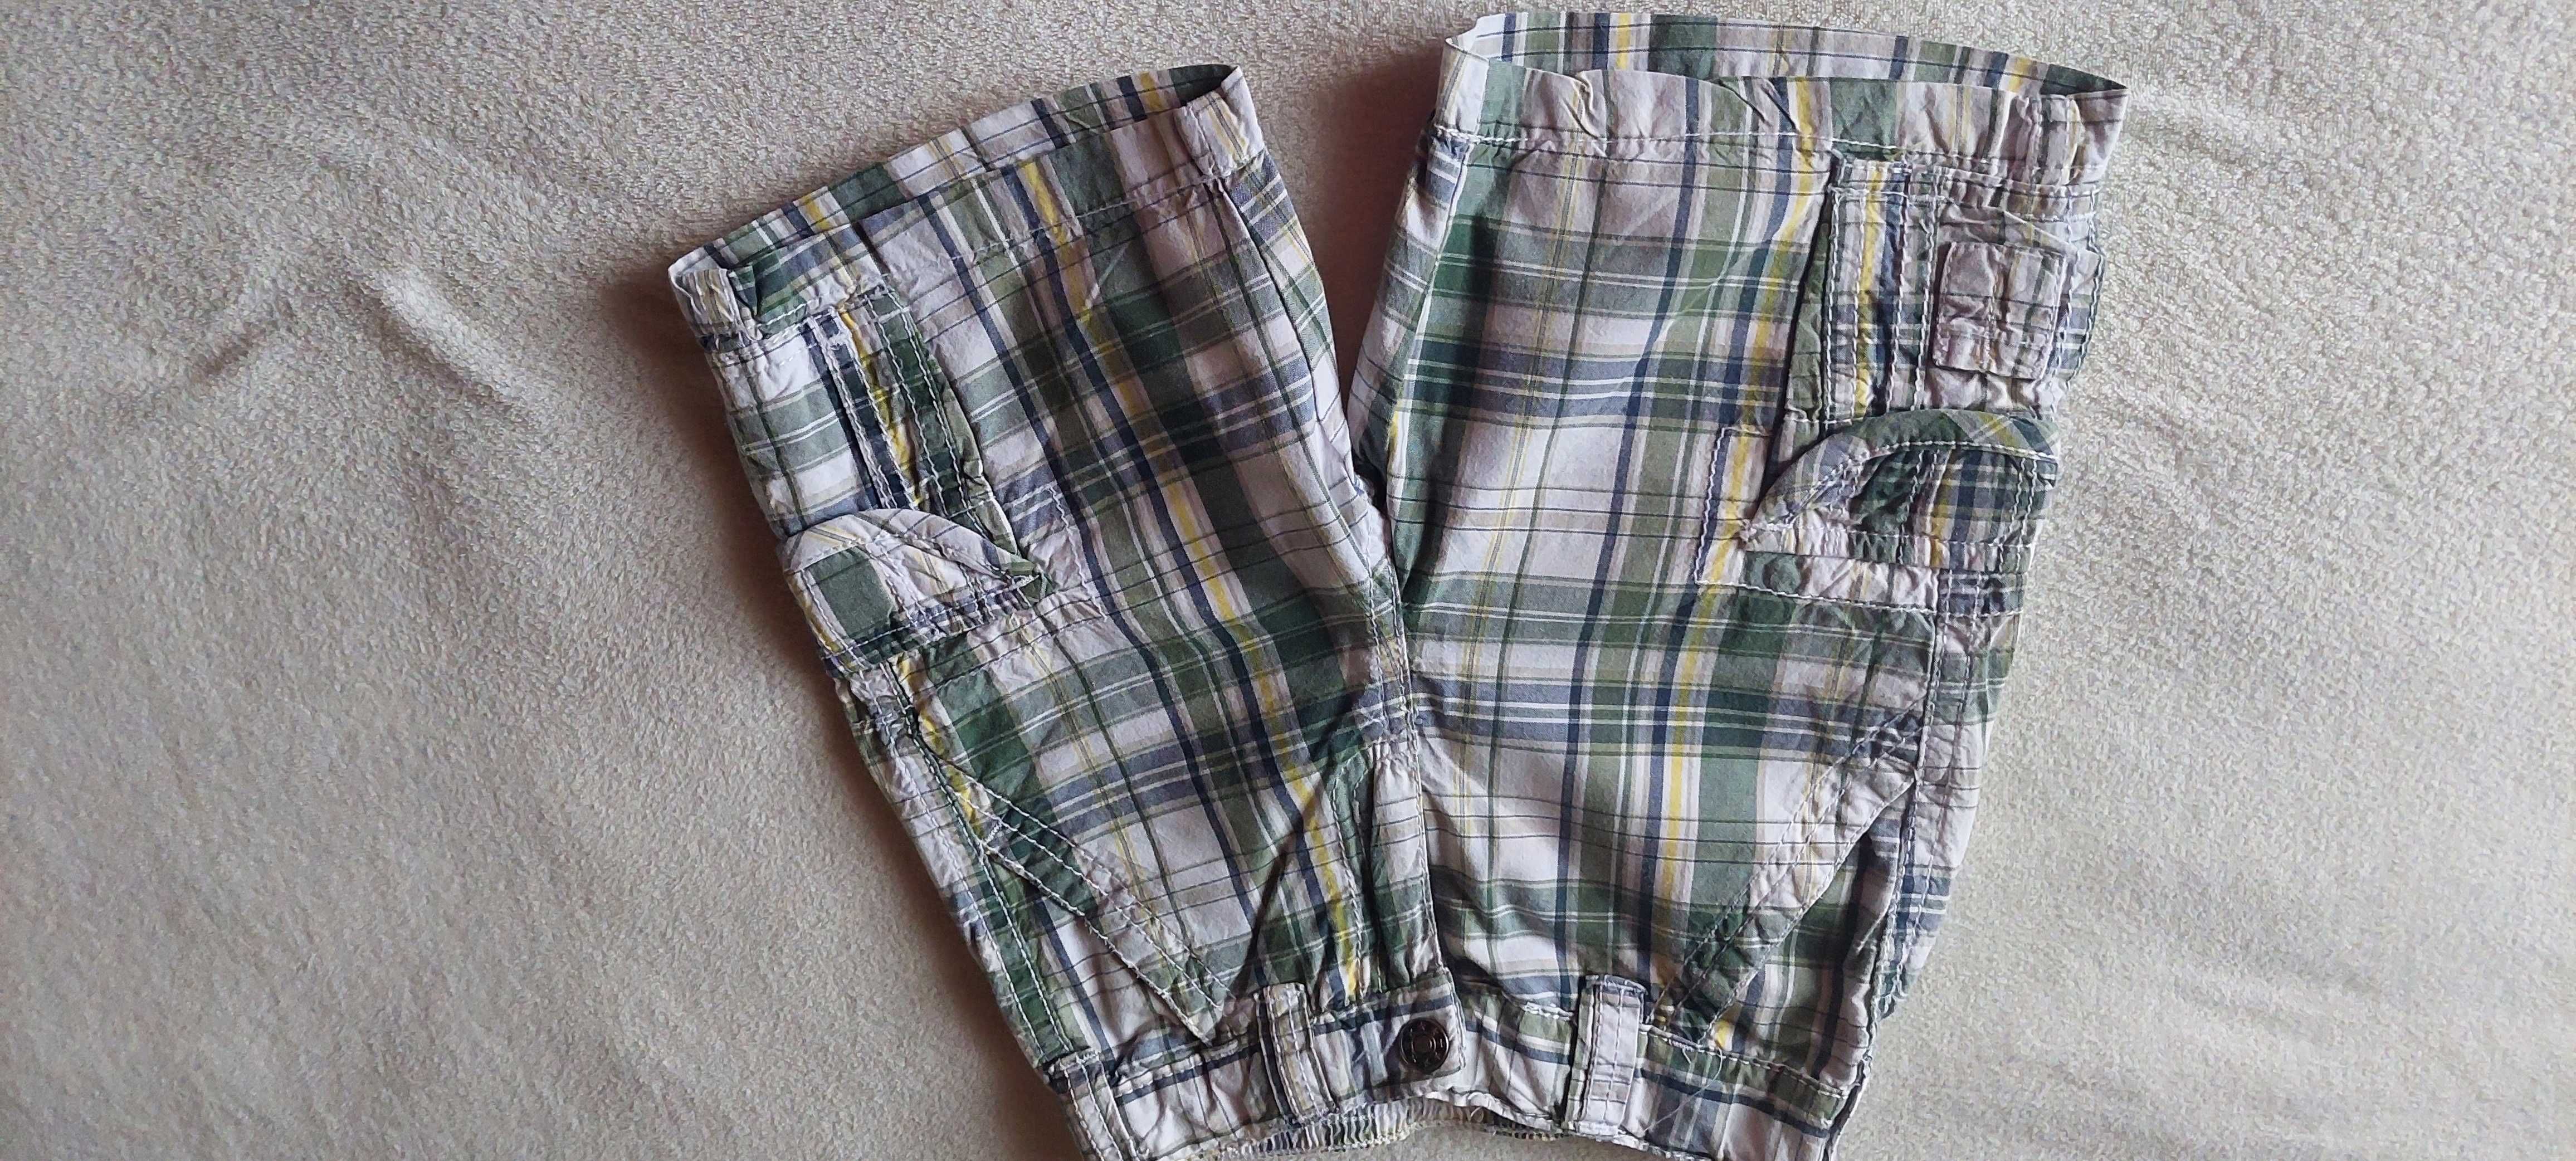 Paka ubrań letnich dla chłopca koszule spodenki spodnie dres 2-3 lata